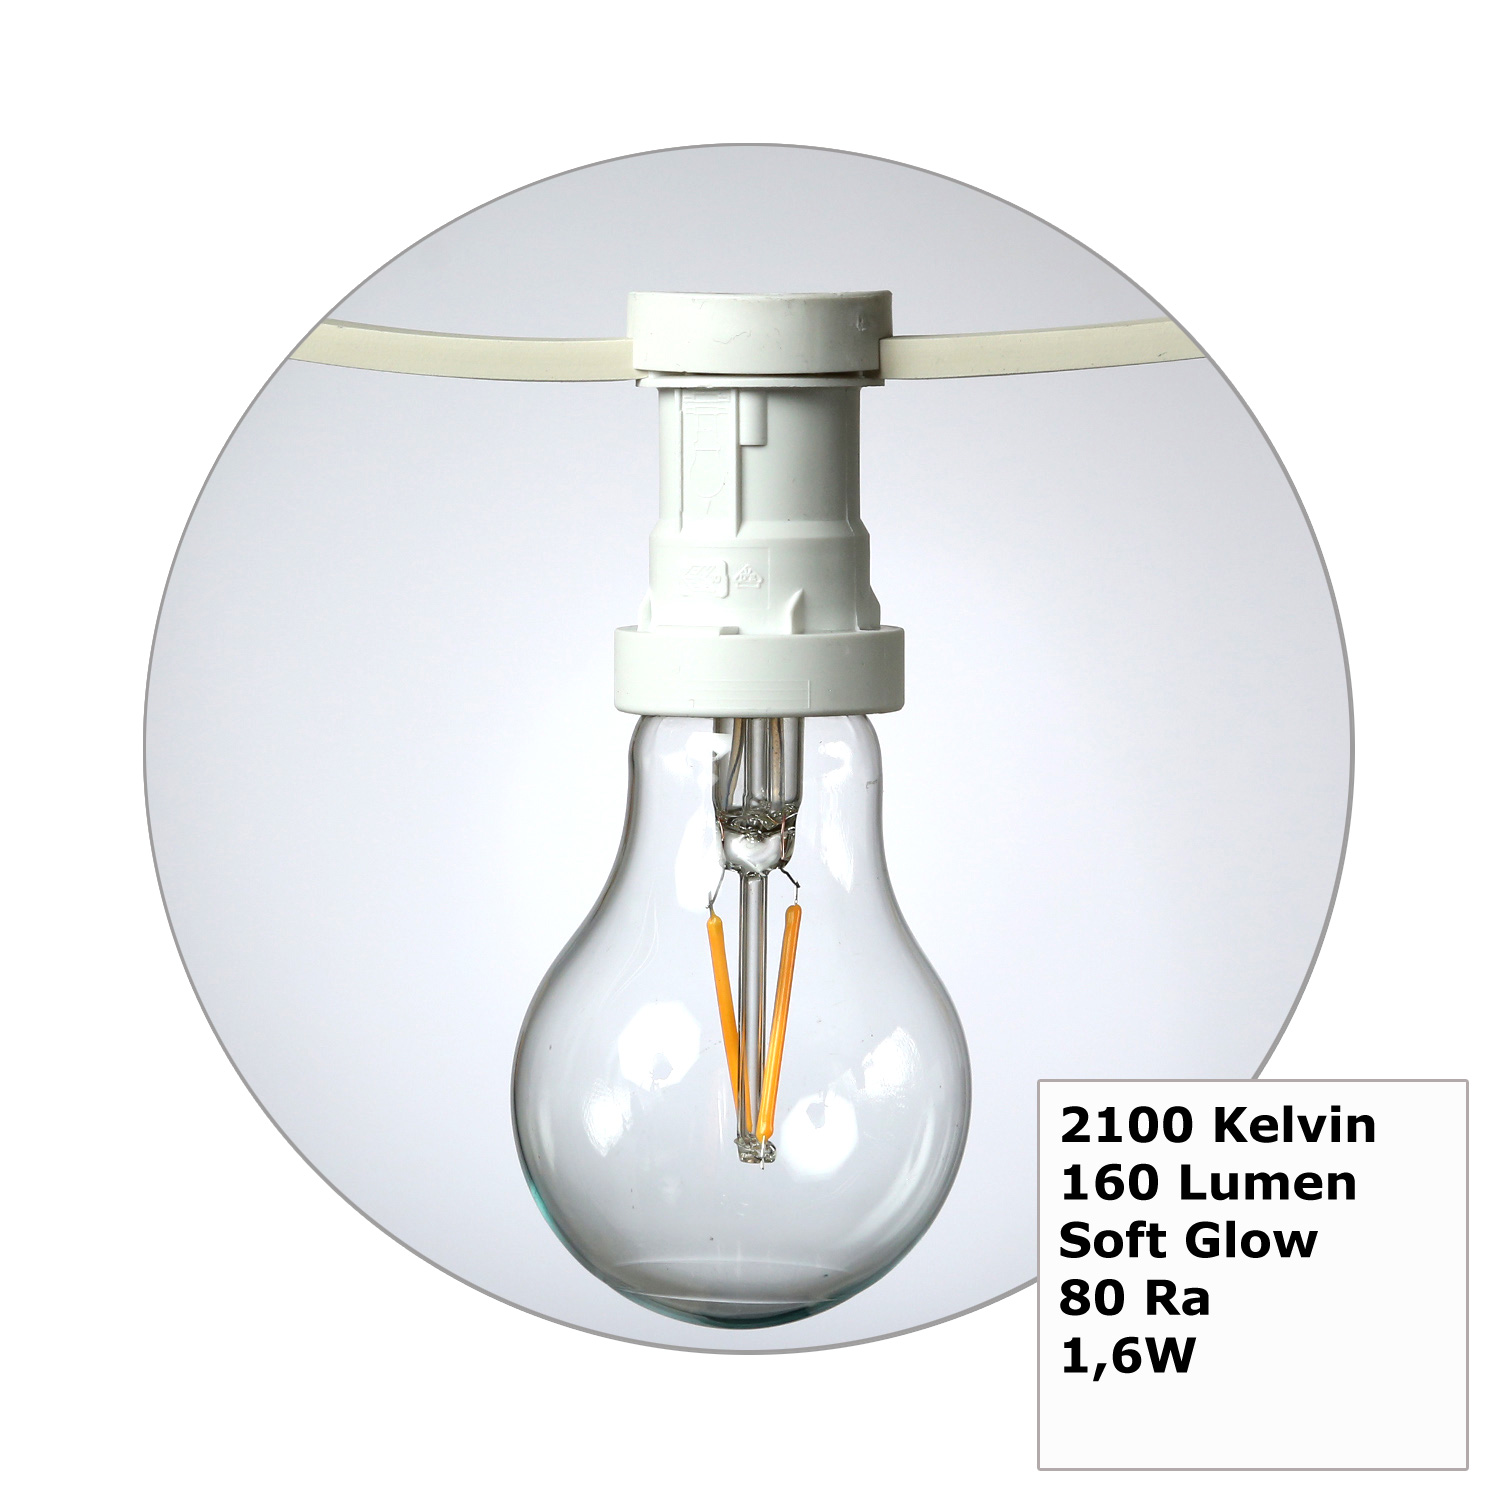 Illu-/Partylichterkette 30m - Außenlichterkette weiß - Made in Germany- 50 Edison LED Filamentlampen